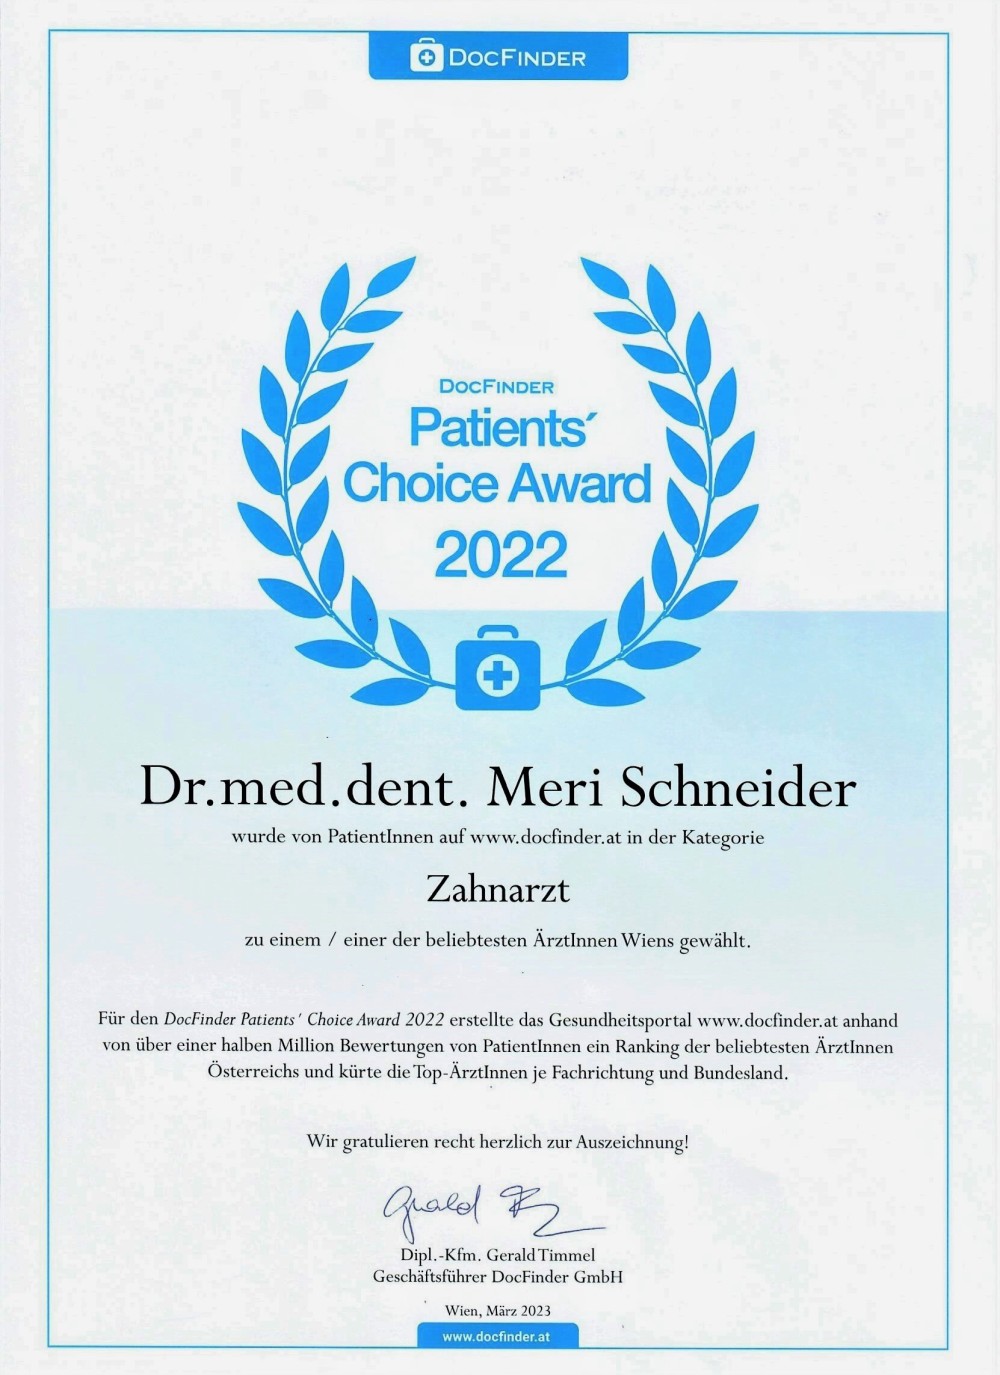 Patients' Choice Award 2022 - DocFinder Österreich